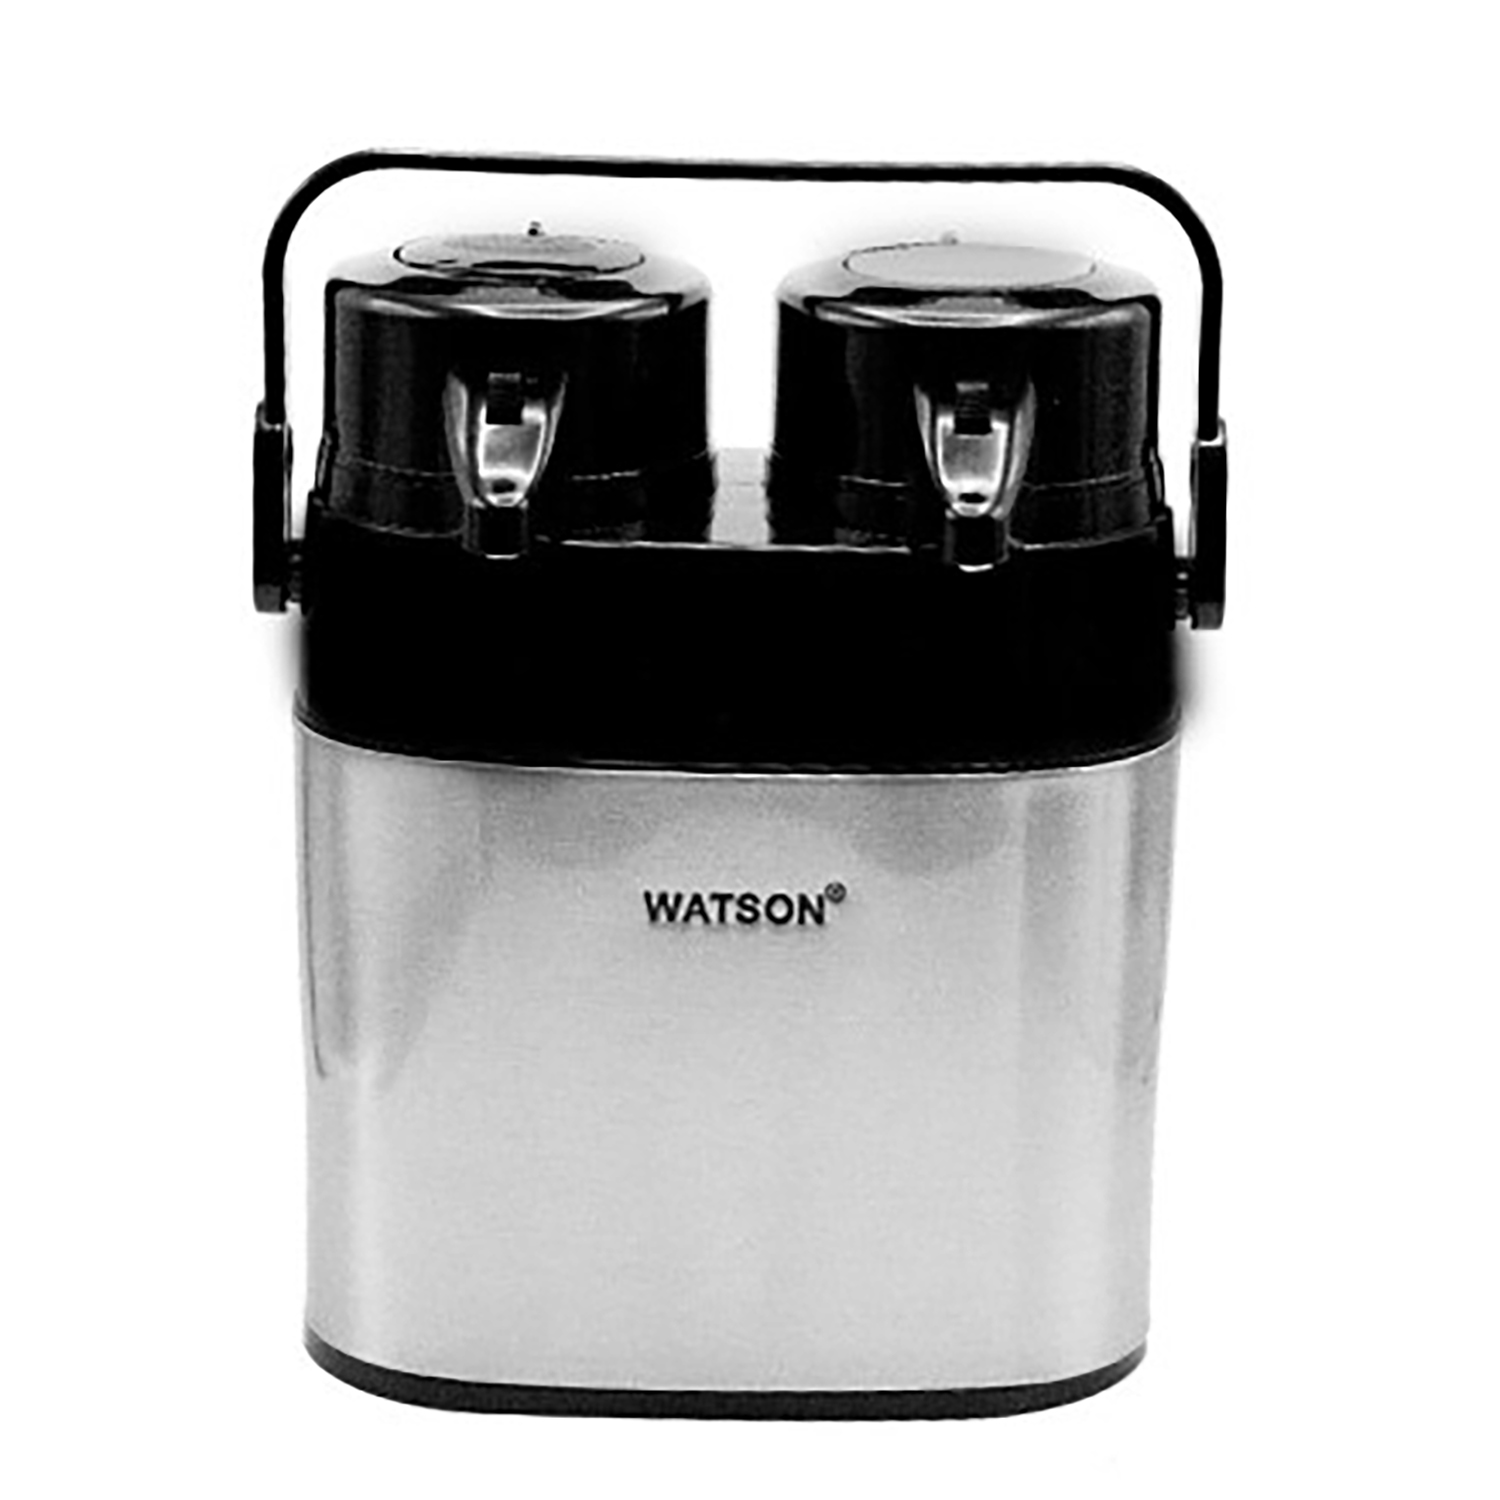 فلاسک واتسون مدل ws-2613-st گنجایش 2.6 لیتر